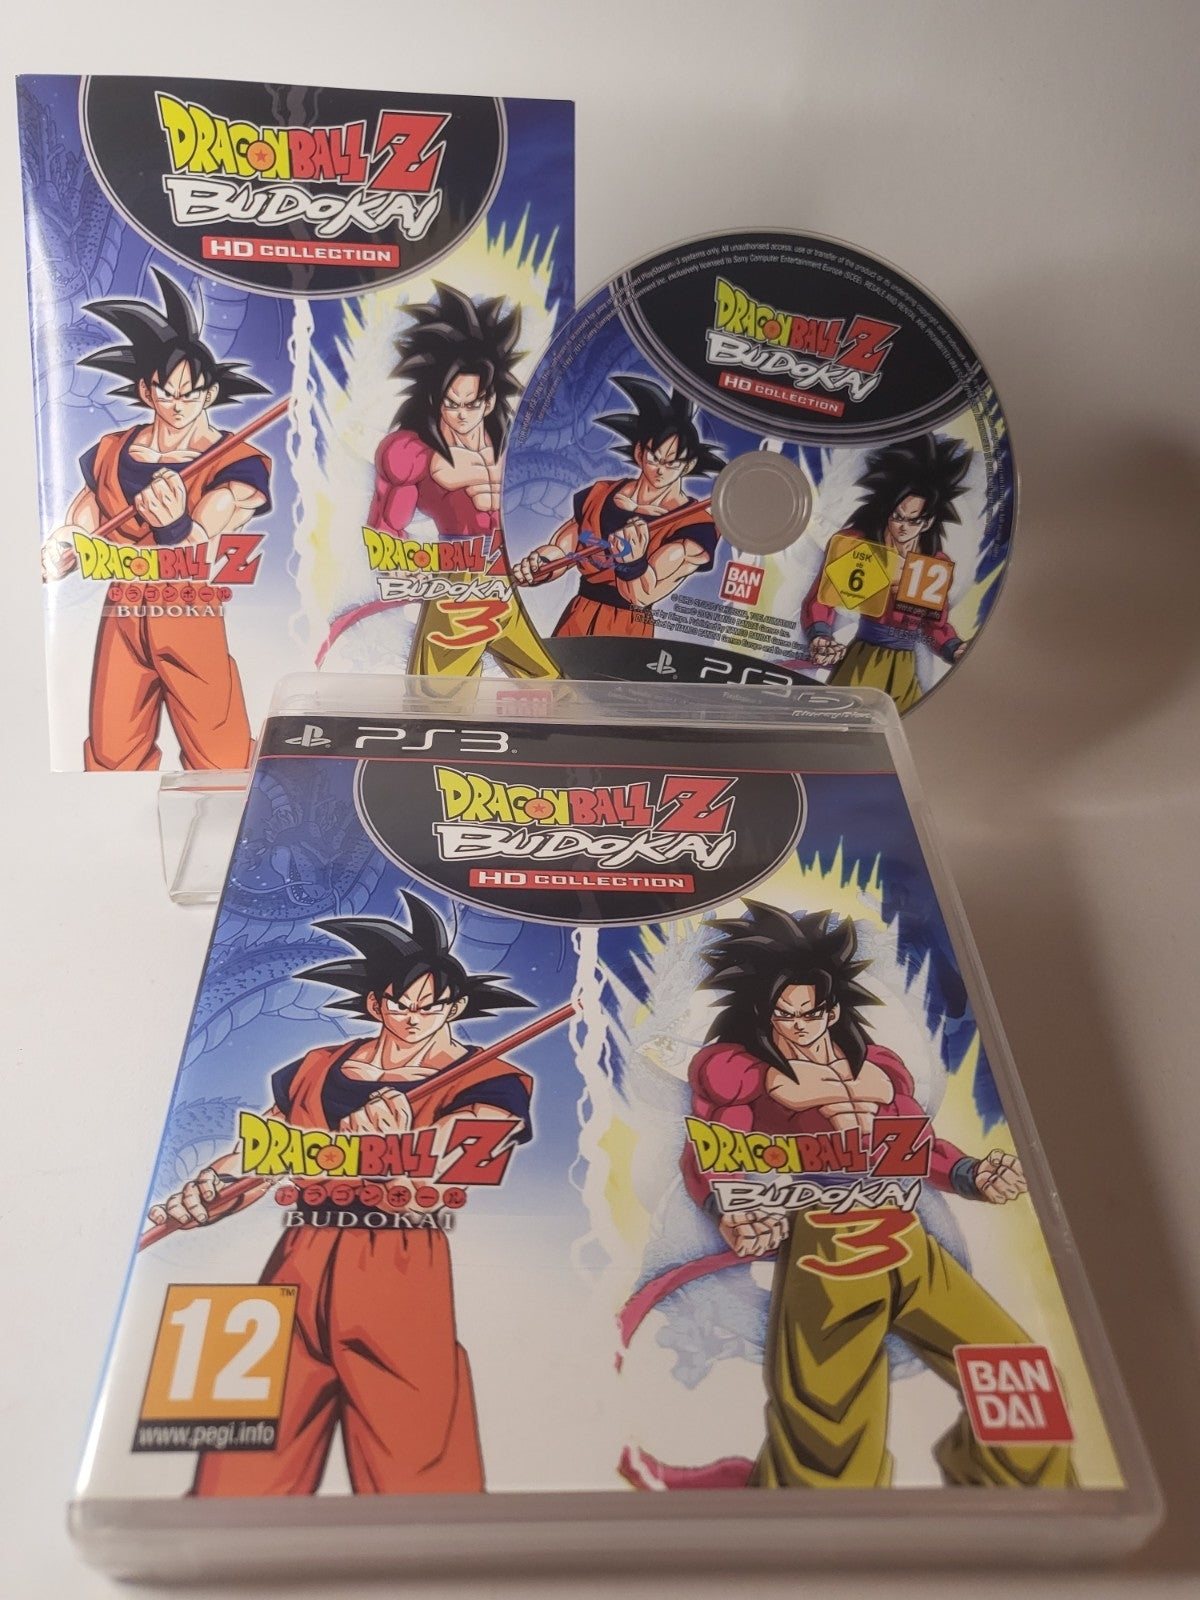 Dragon Ball Z Budokan HD Collection Playstation 3